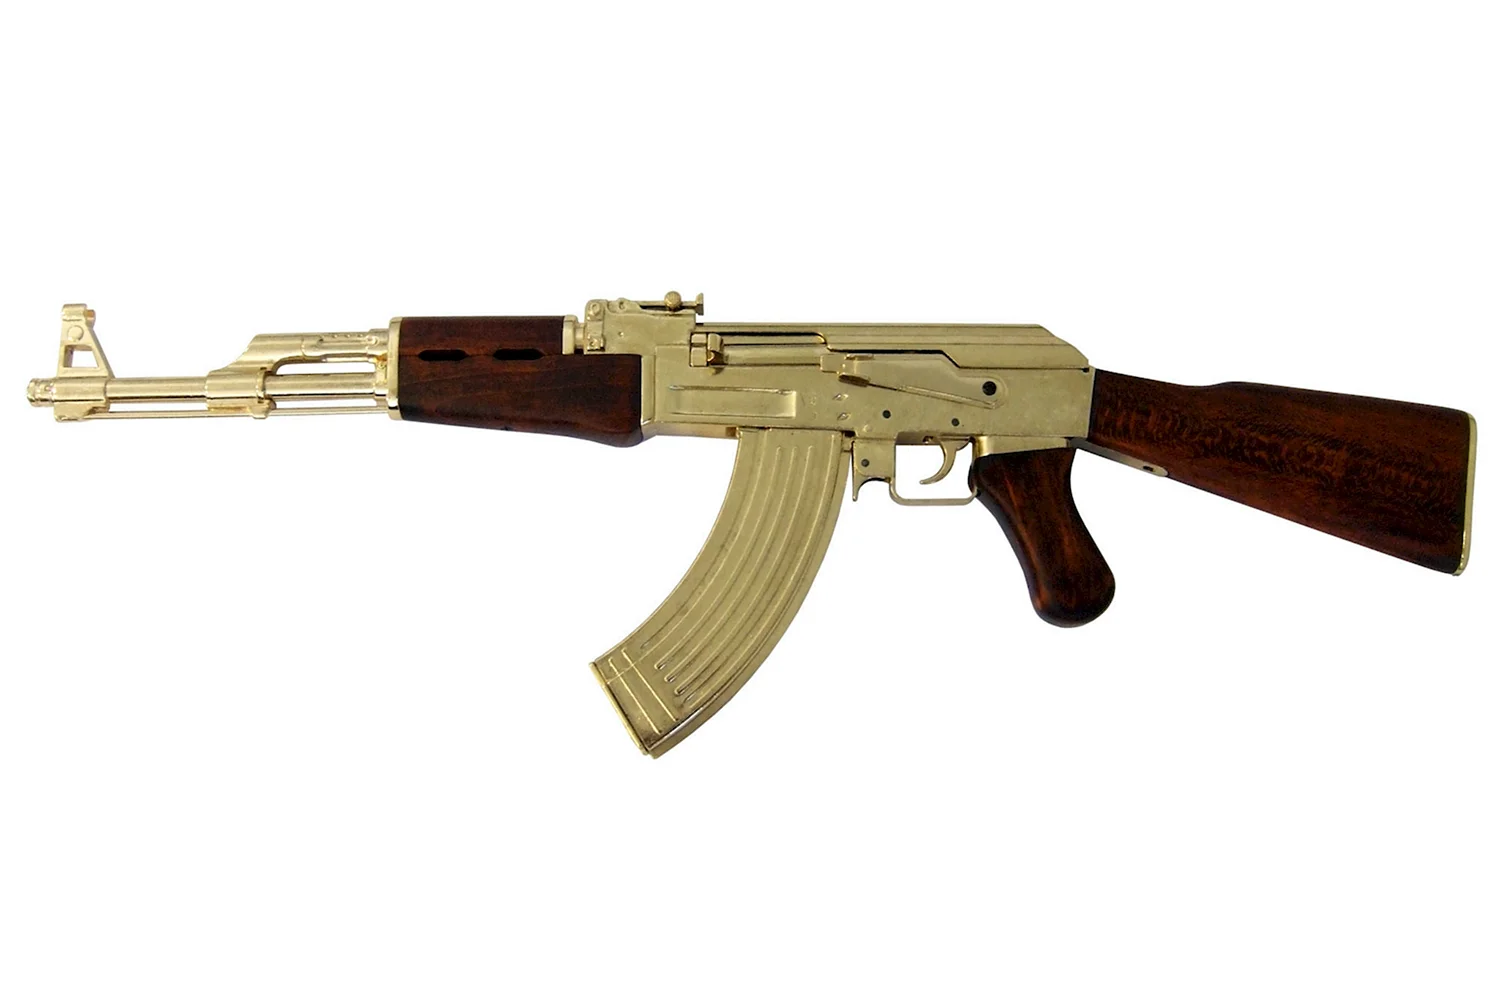 Автомат Калашникова АК-47 золотой